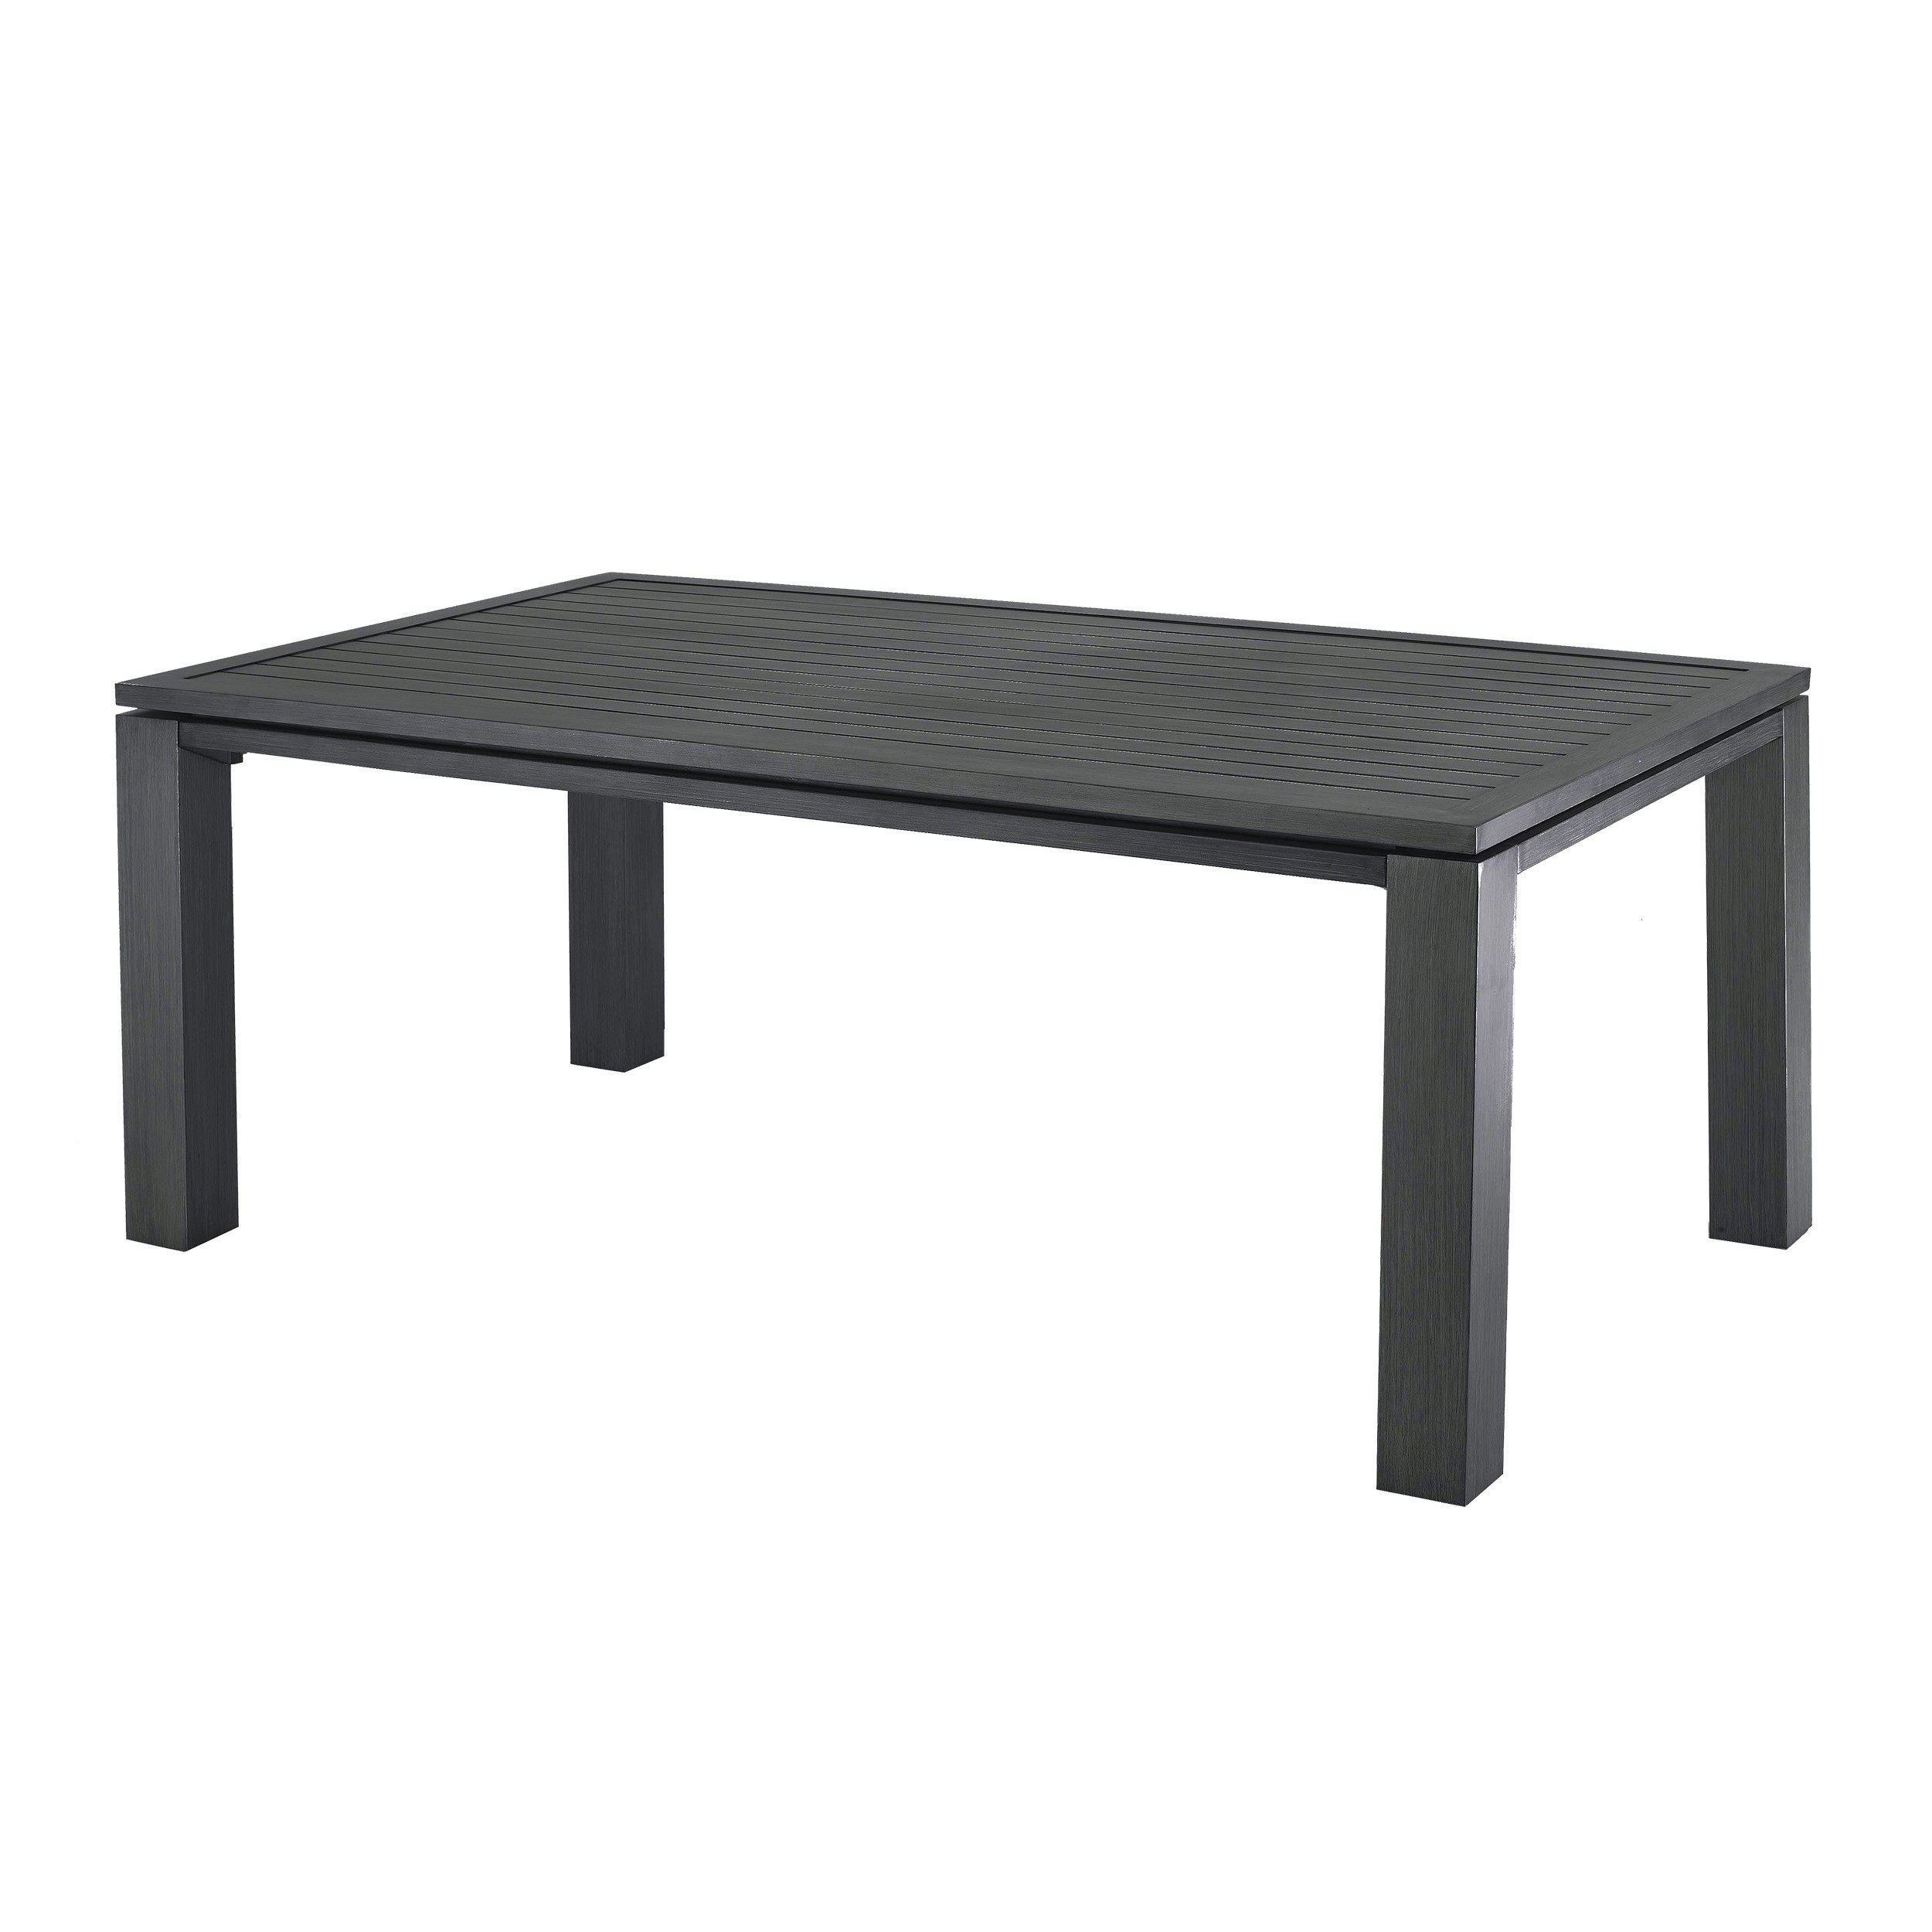 Table de jardin 180 cm Marbella grise : craquez pour nos tables de